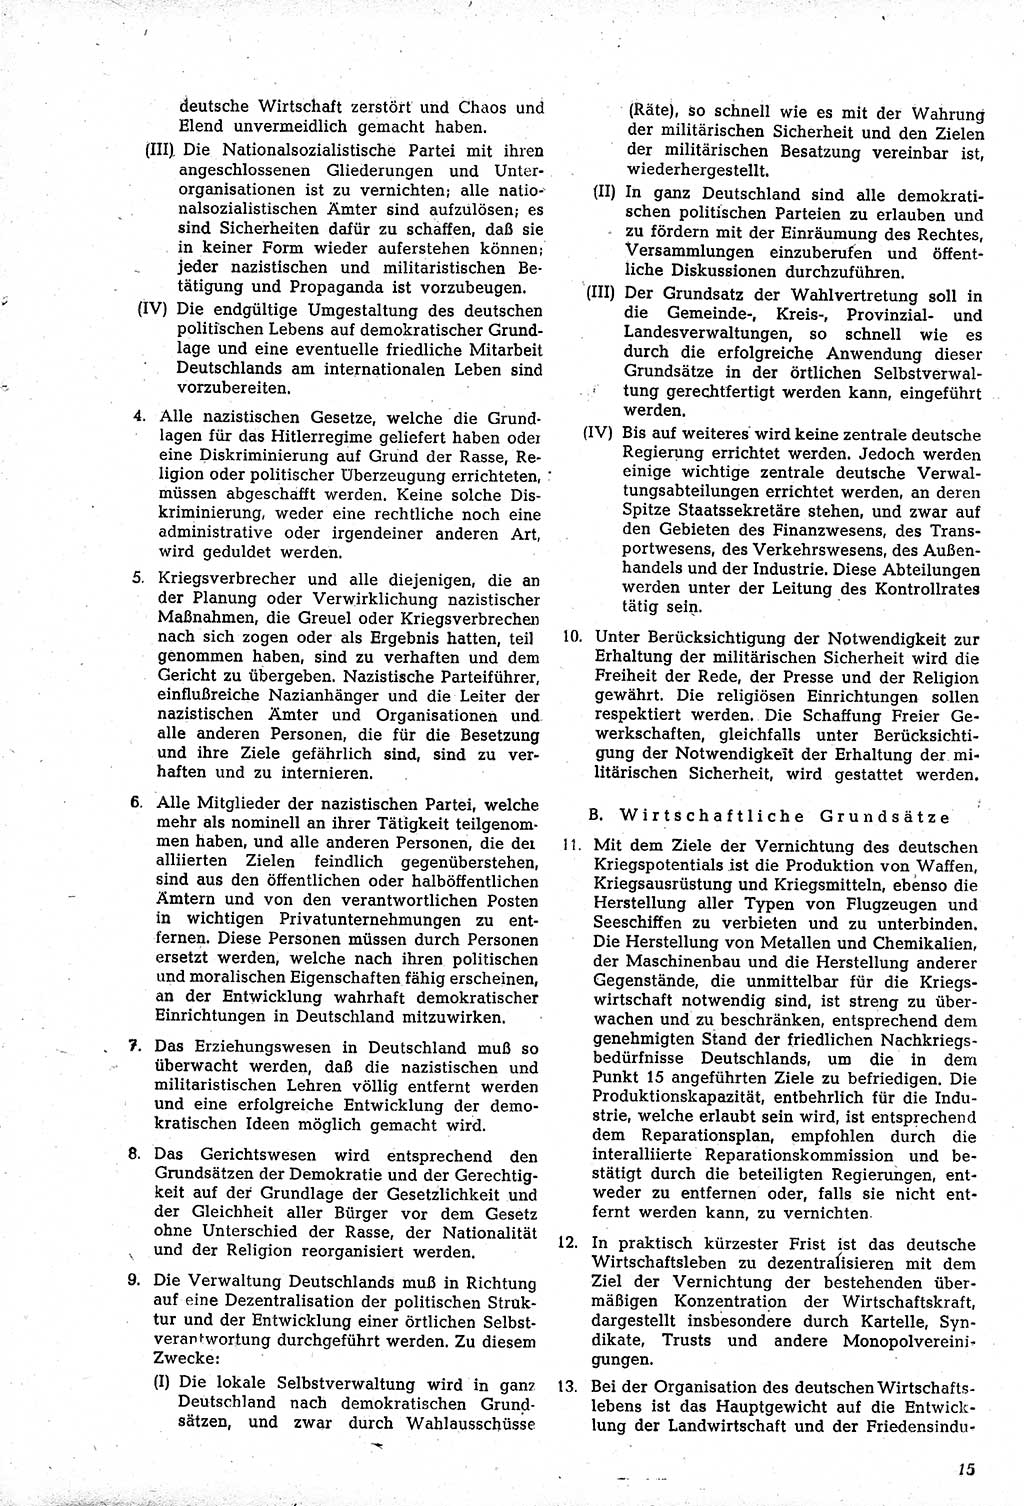 Amtsblatt des Kontrollrats (ABlKR) in Deutschland, Ergänzungsblatt Nr. 1, Sammlung von Urkunden betreffend die Errichtung der Alliierten Kontrollbehörde 1945, Seite 15 (ABlKR Dtl., Erg. Bl. 1 1945, S. 15)